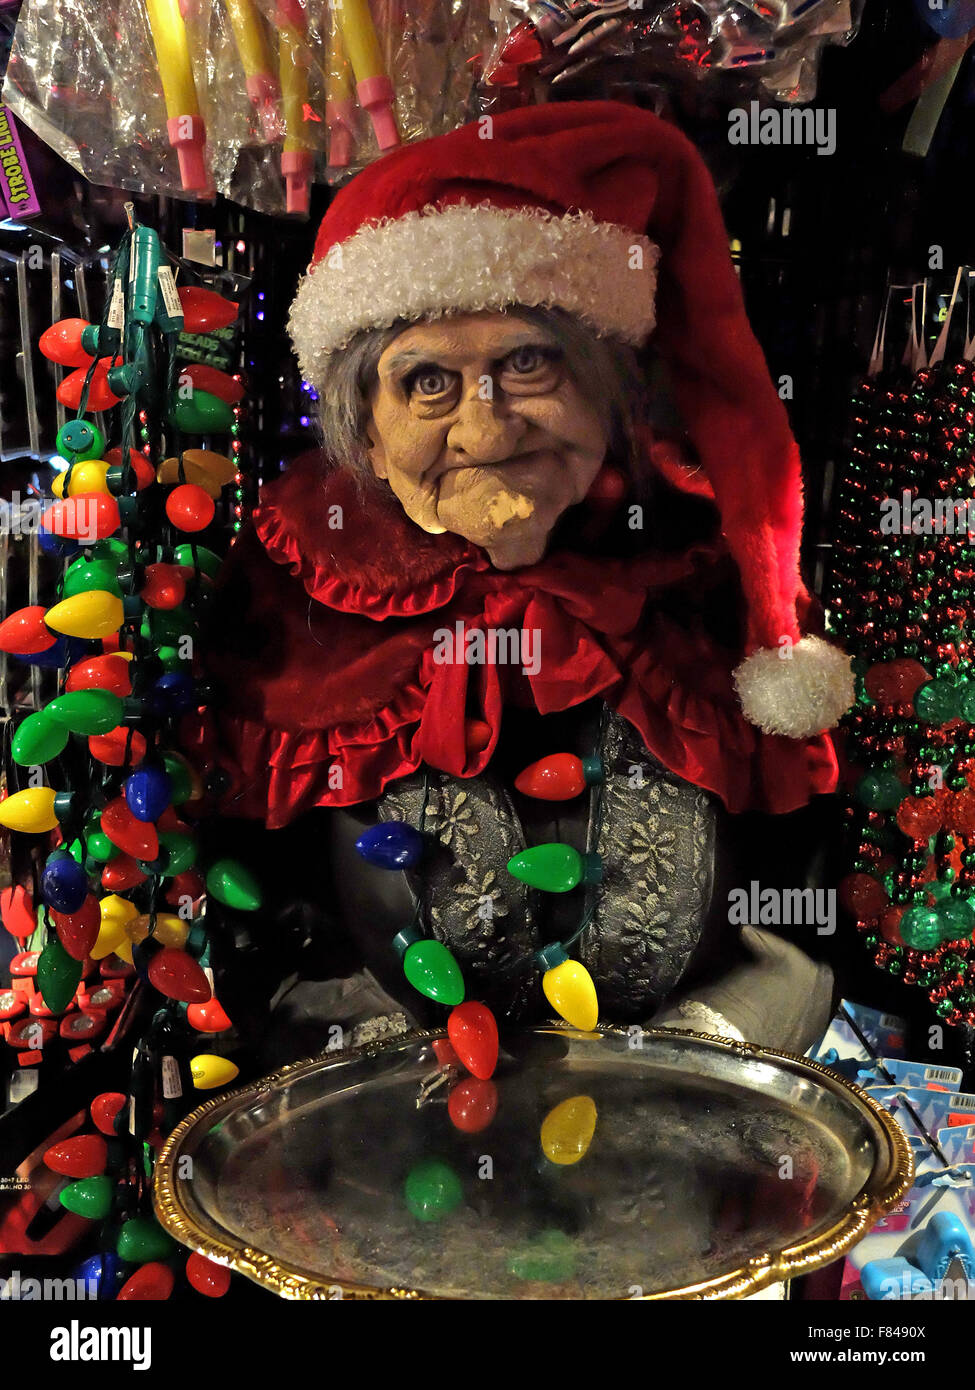 Una espantosa buscando busto de cerámica de una mujer anciana decorado para la Navidad en una gran tienda de disfraces en Greenwich Village, Nueva York Foto de stock